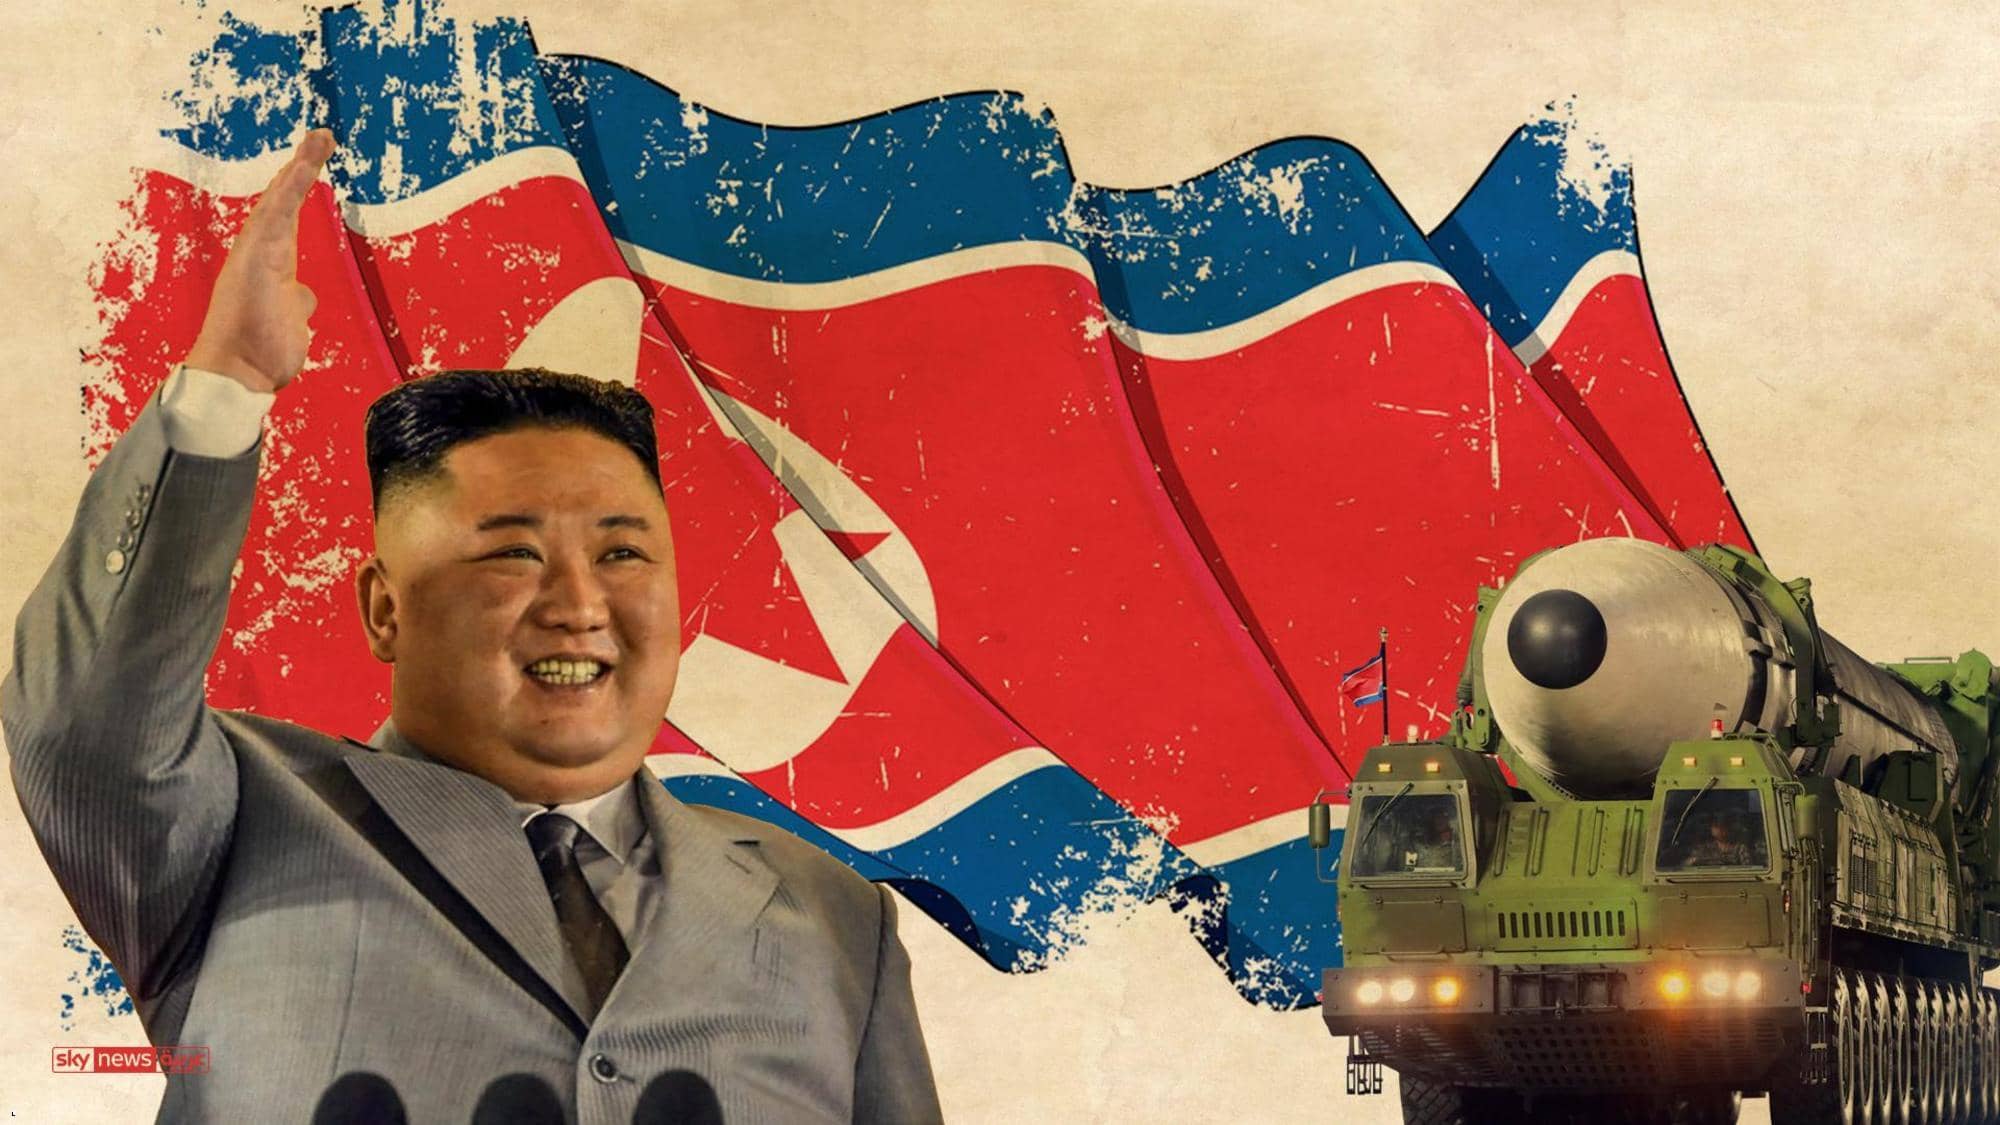 ماذا نعرف عن صاروخ كوريا الشمالية المرعب؟..إنفوغراف يوضح حقيقة الصاروخ